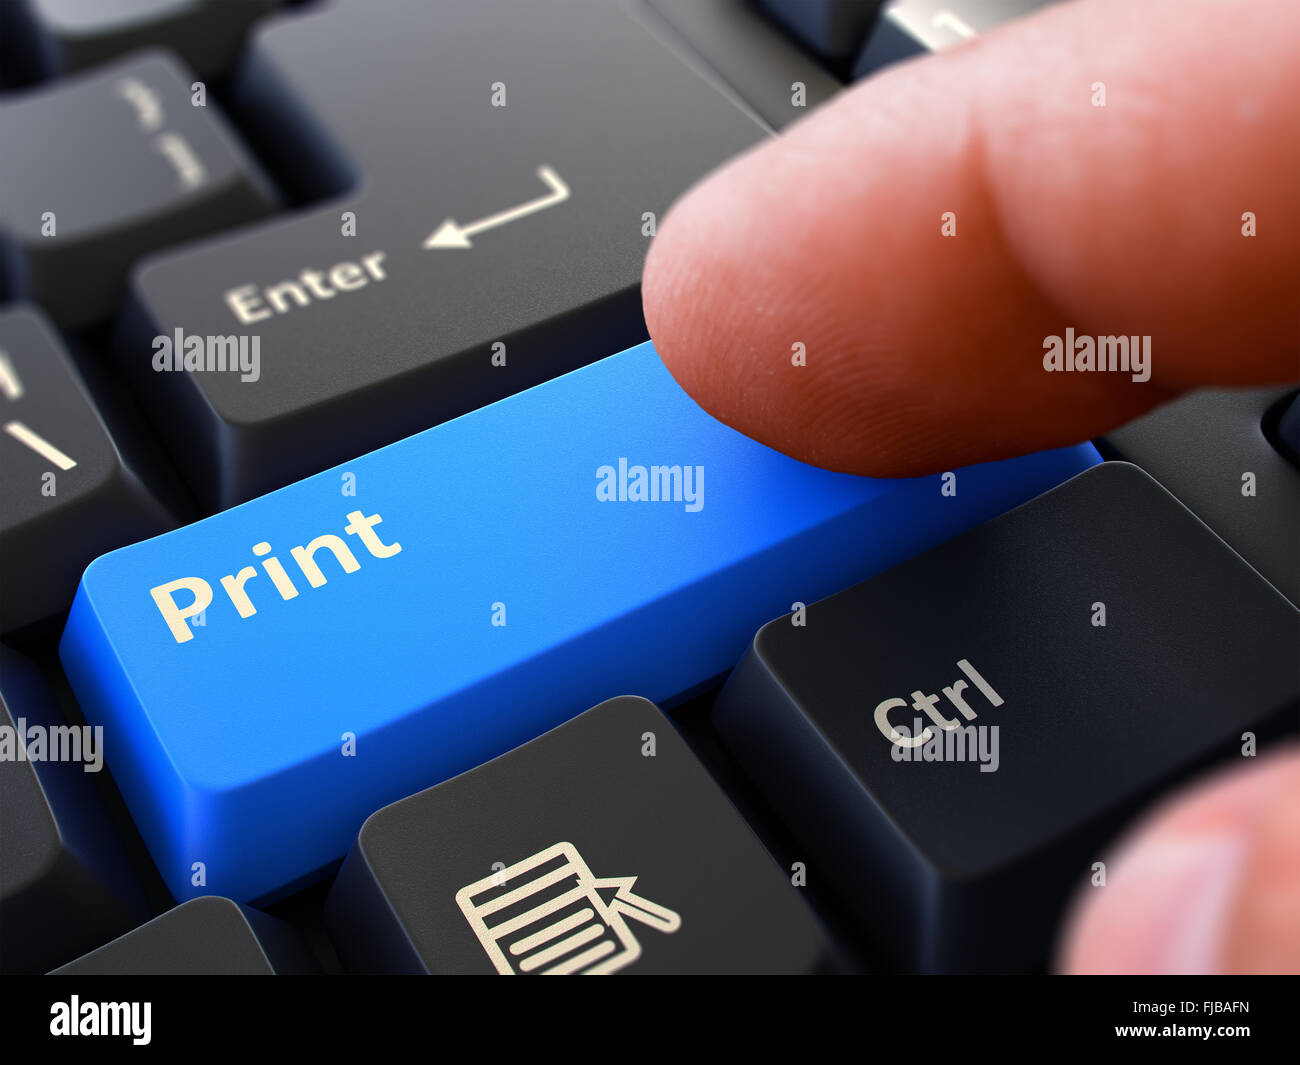 Pressions de doigt touche clavier bleu Imprimer Photo Stock - Alamy